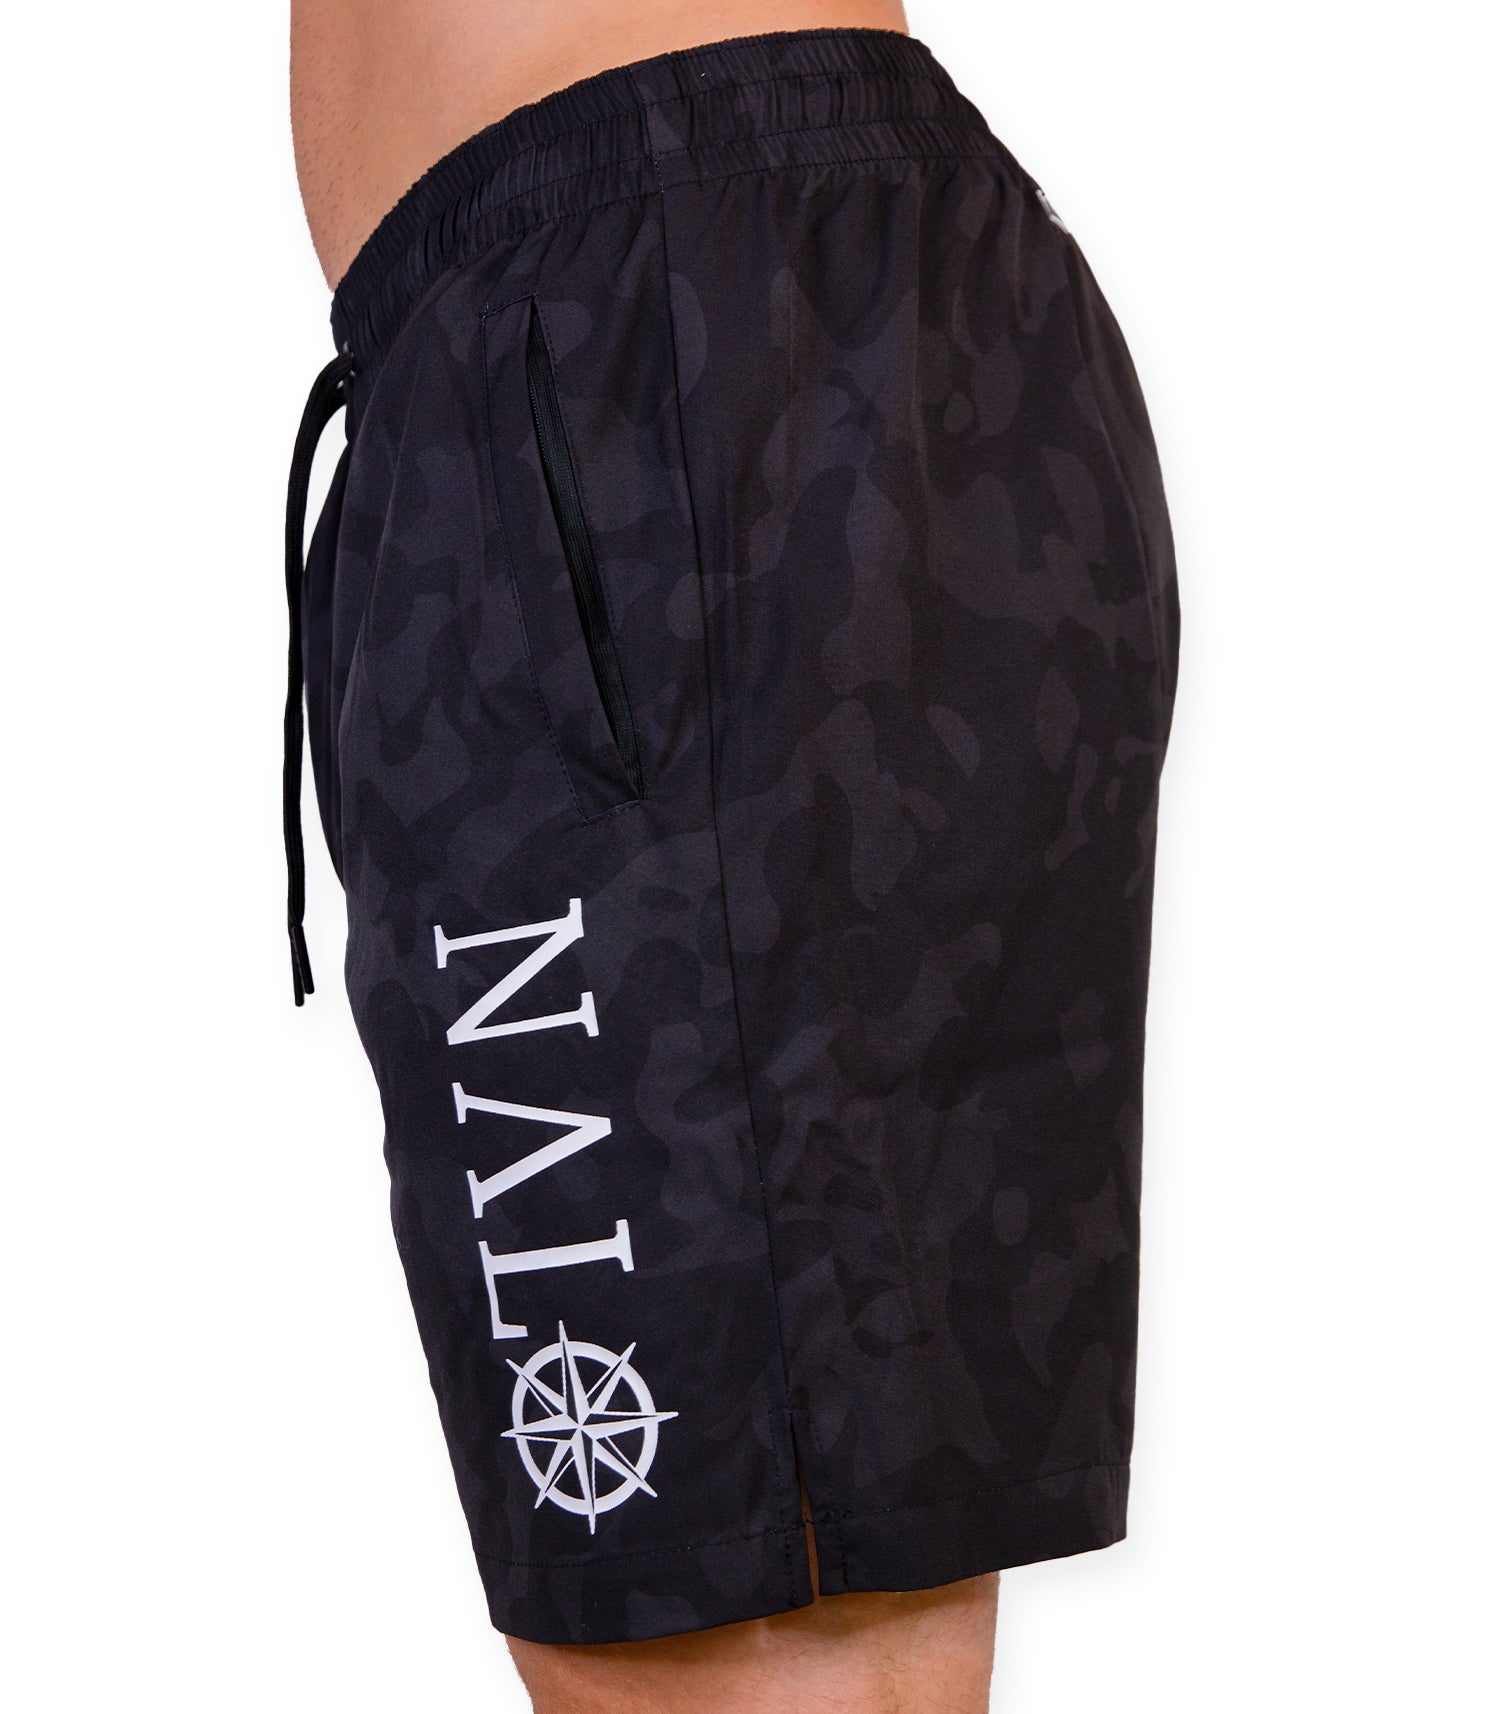 Nalo 7inch Board Shorts